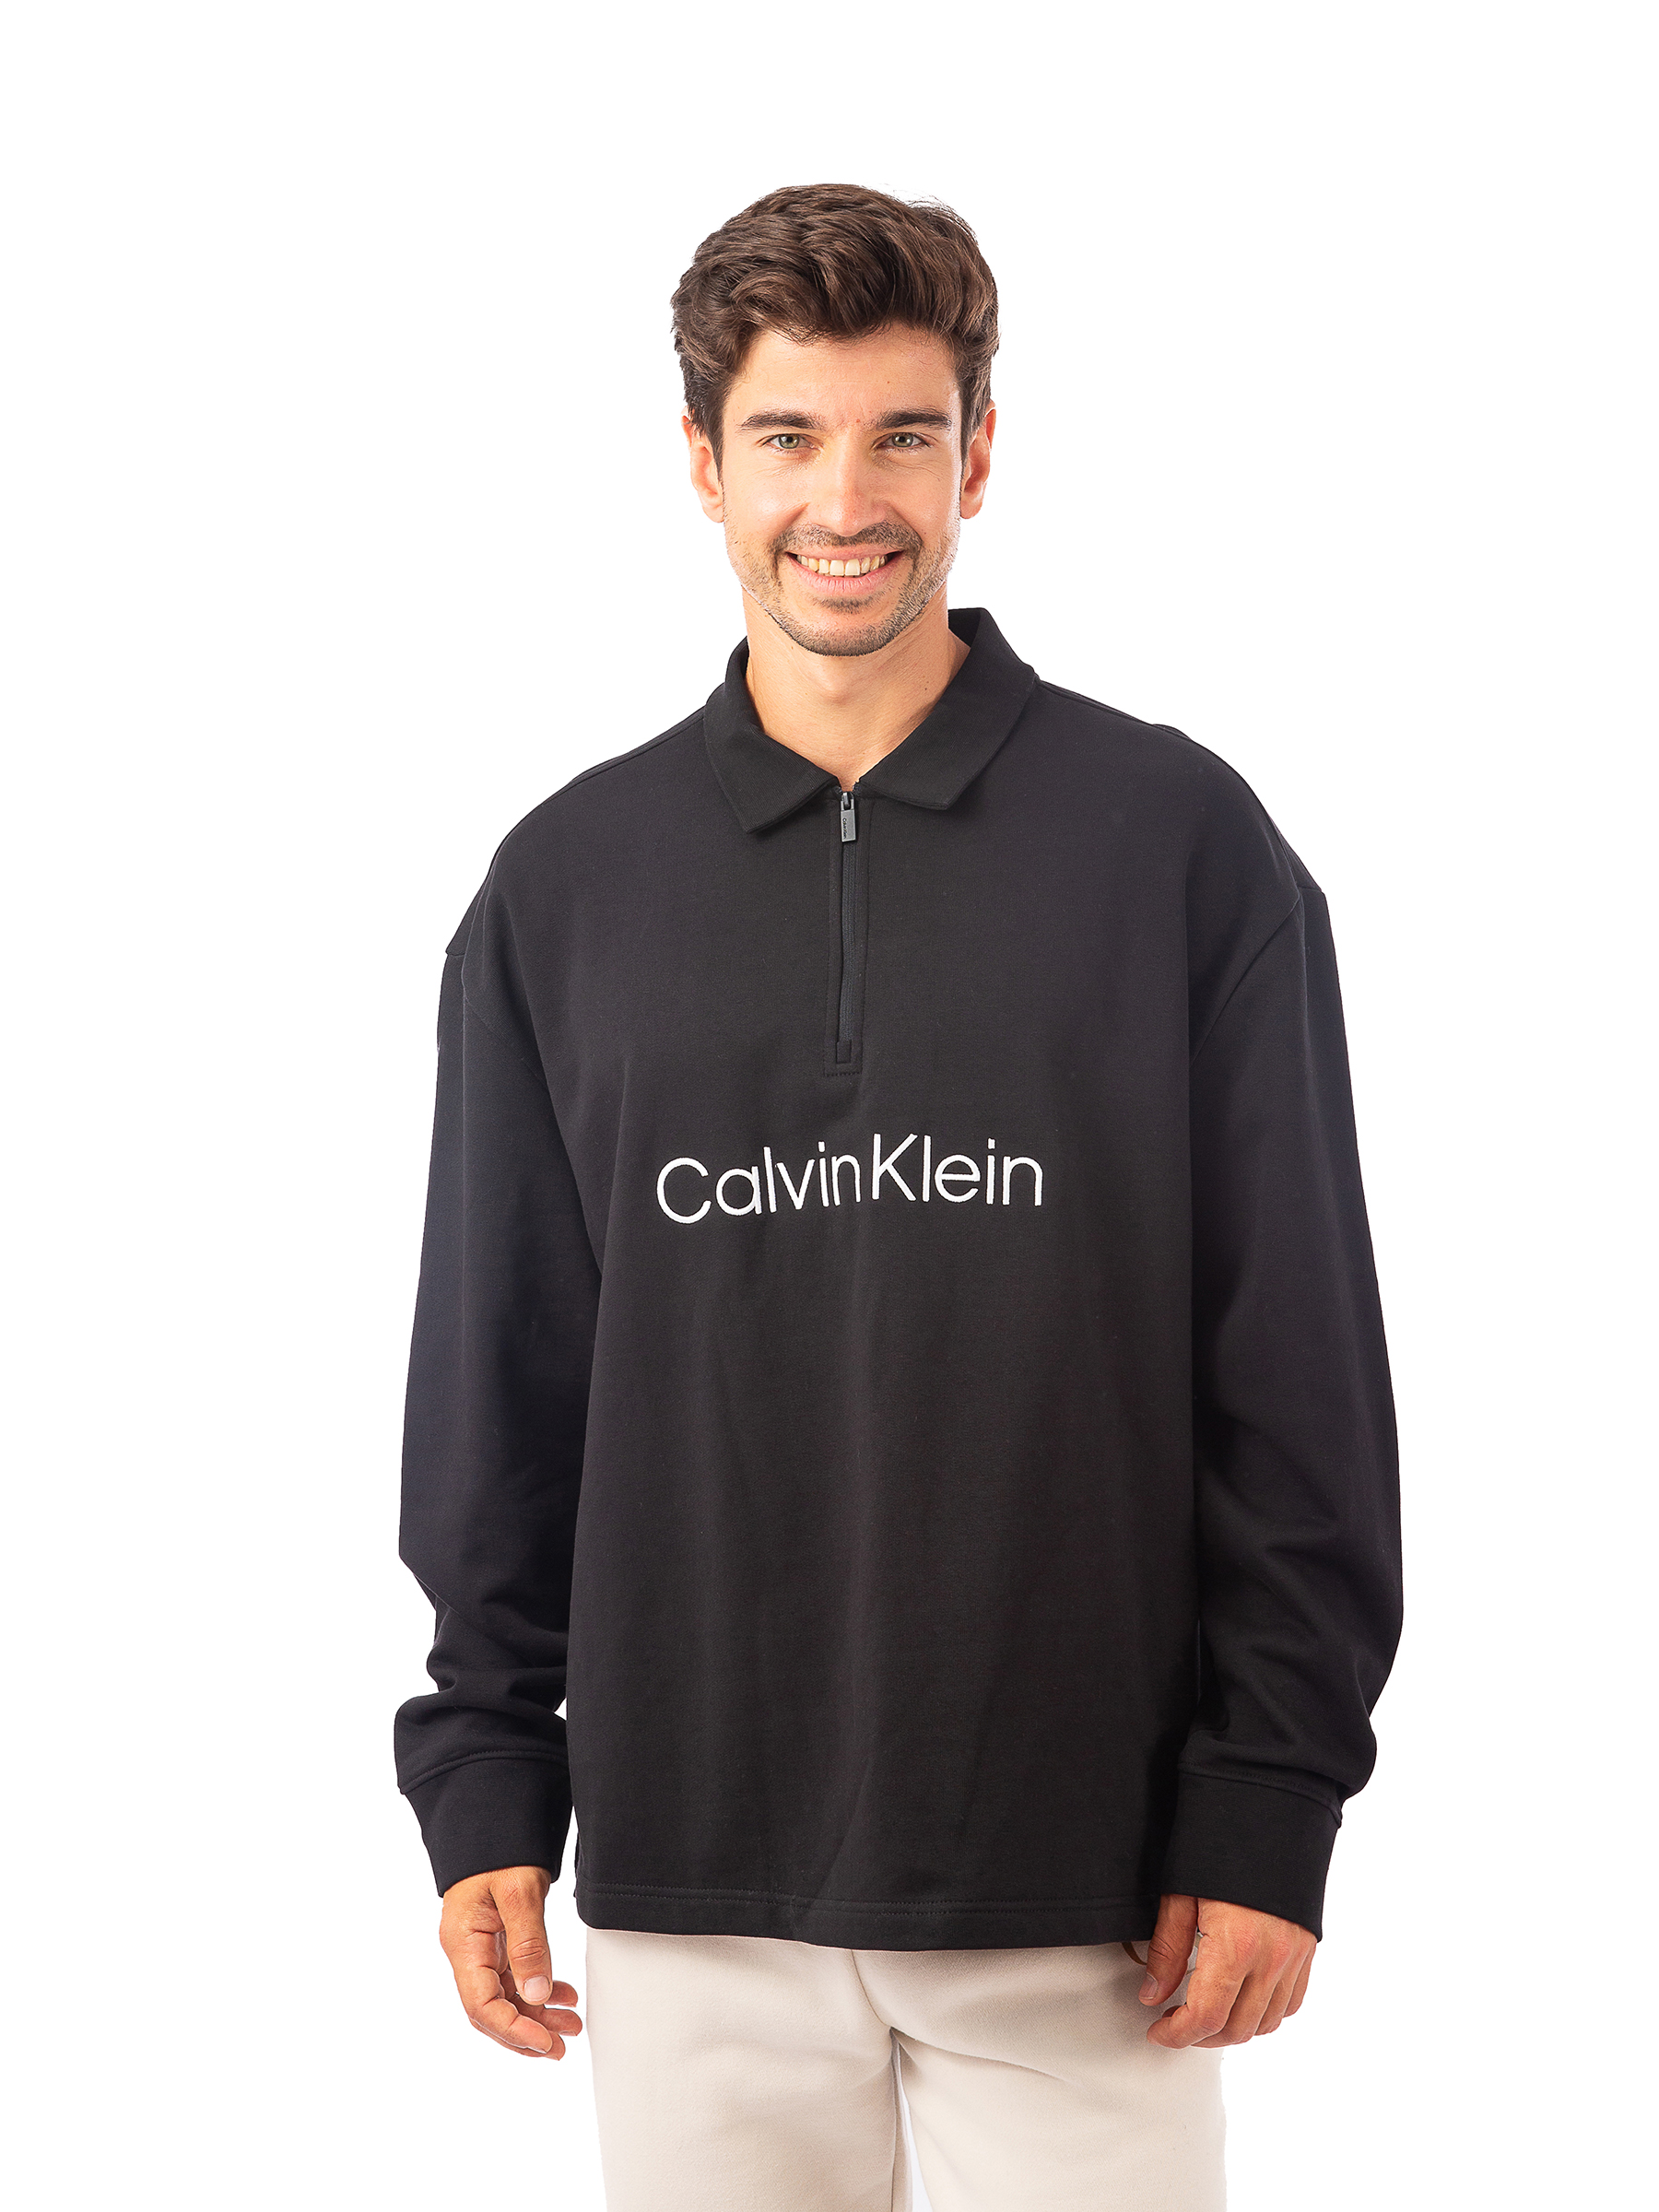 Свитшот мужской Calvin Klein 40HM250 черный XL